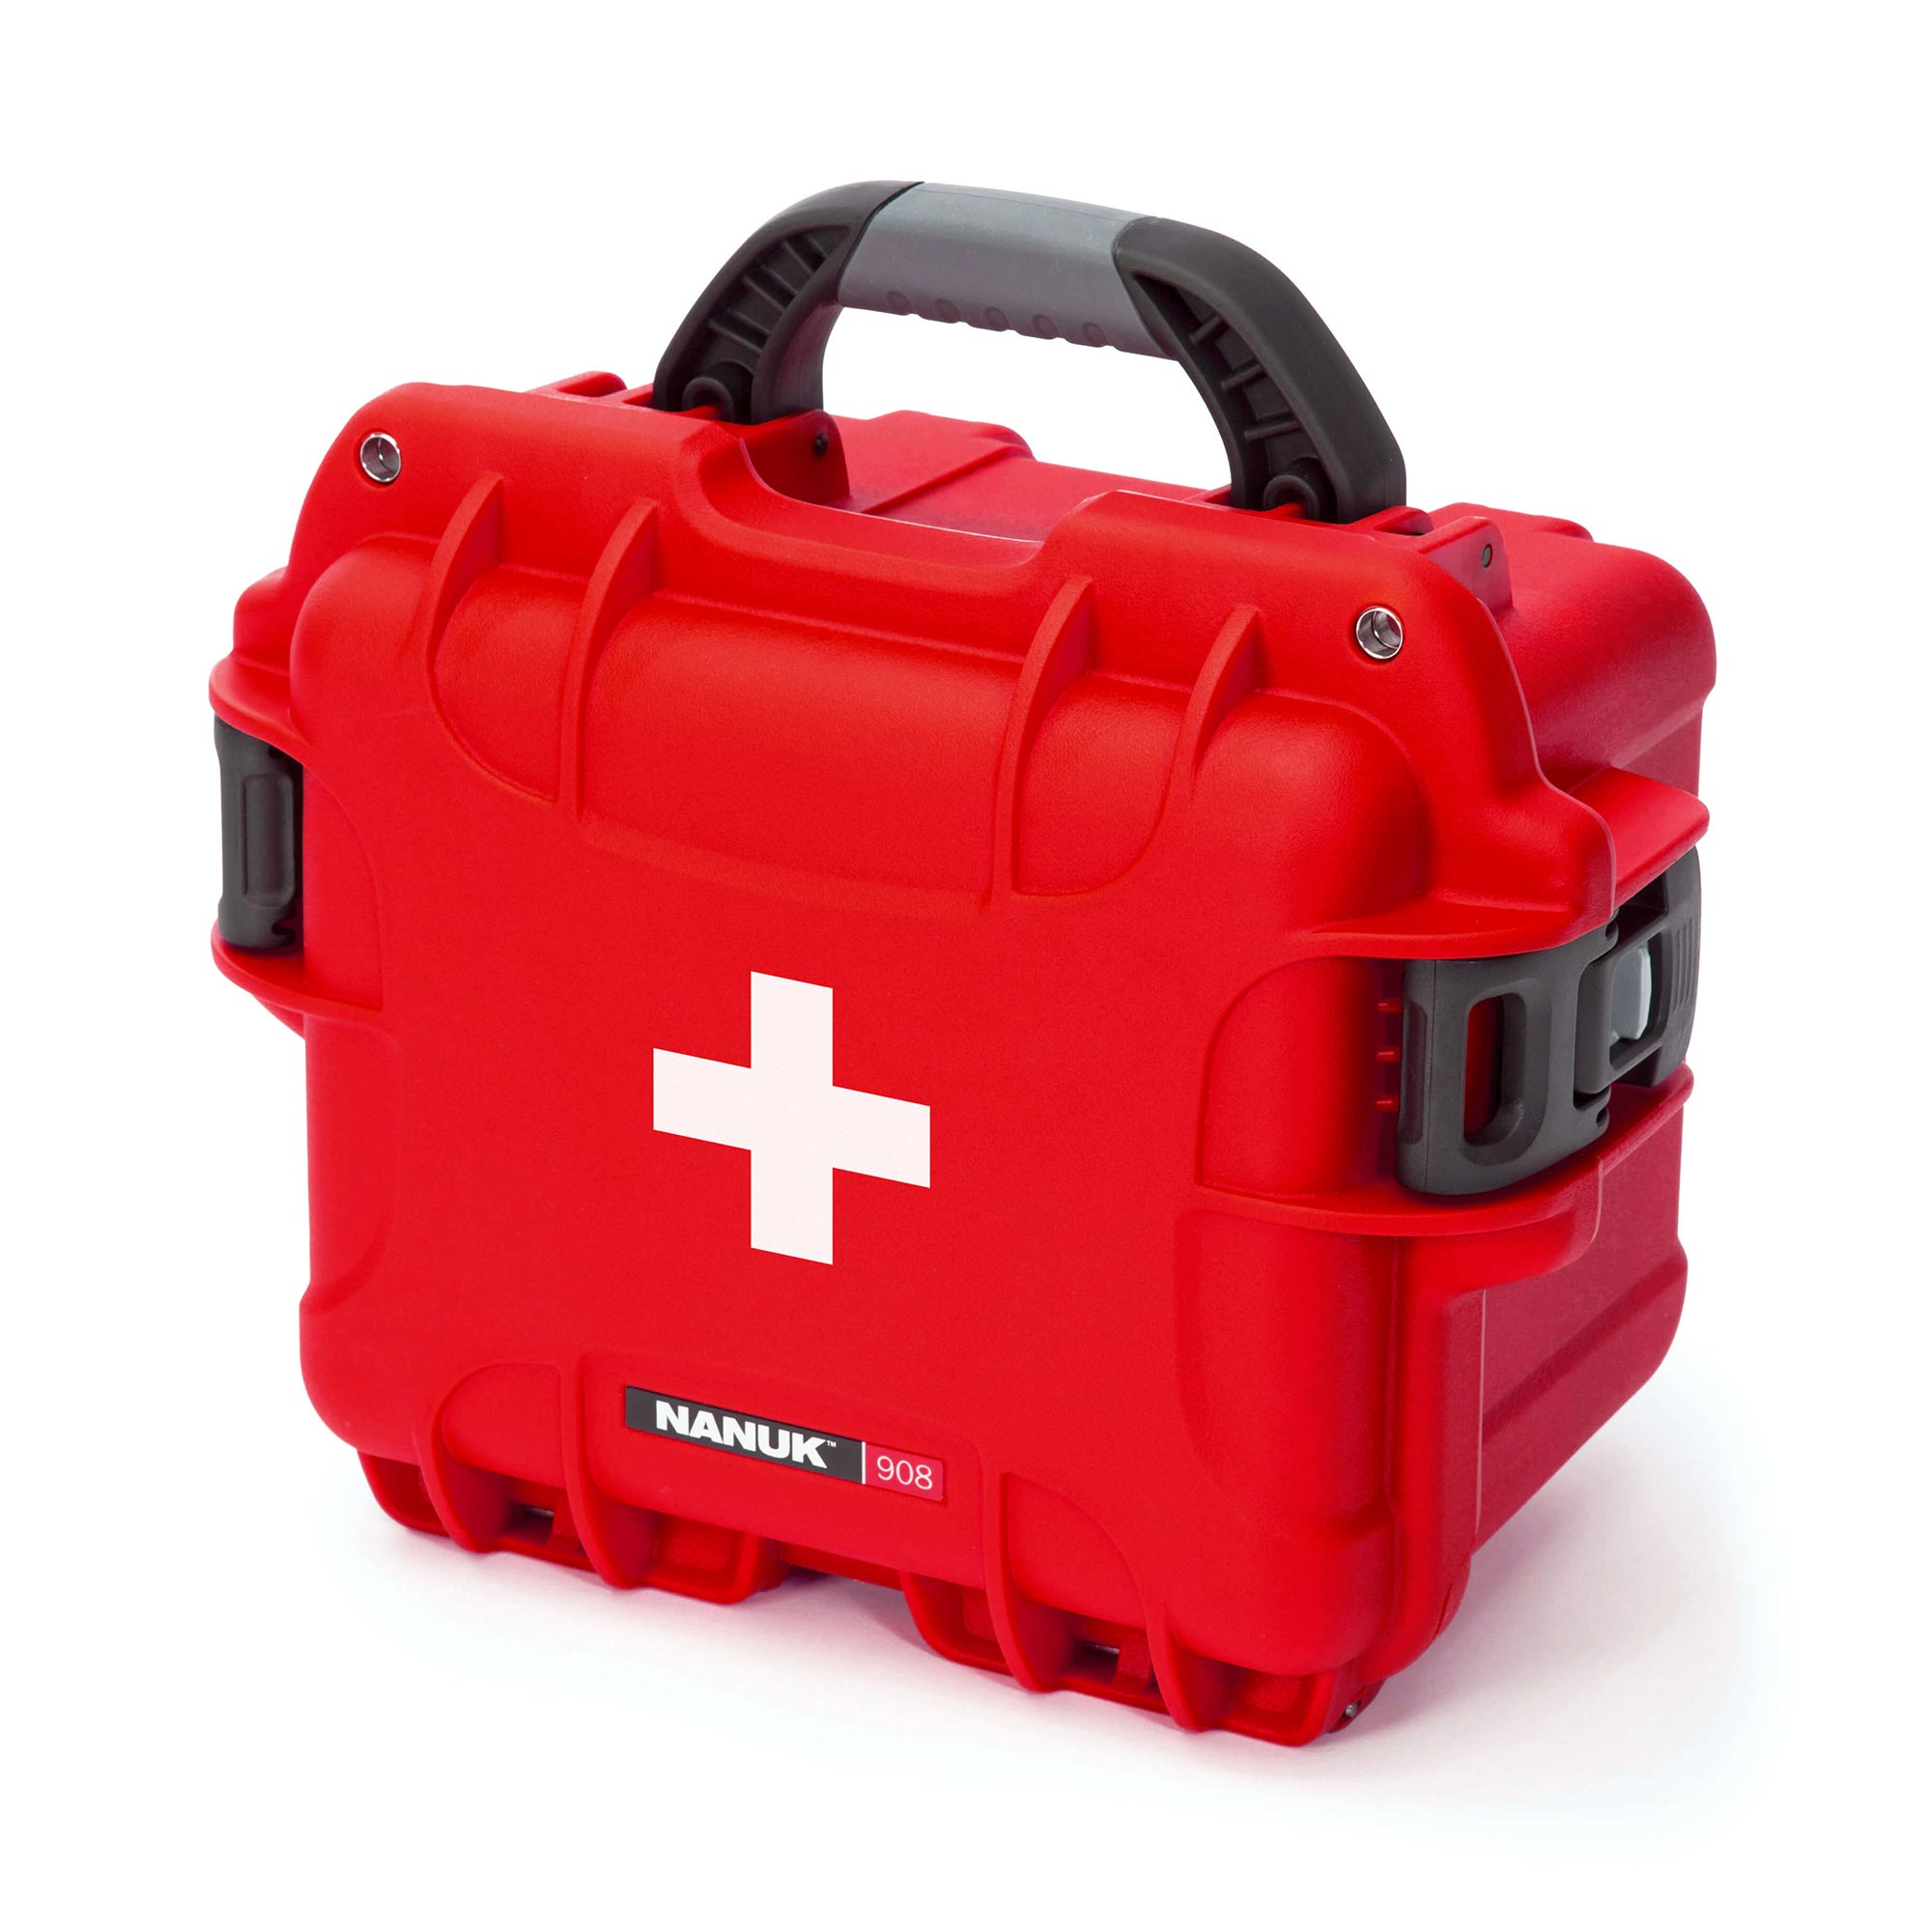 NANUK 908 valise de premiers secours - valise extérieur - Rouge - NANUK